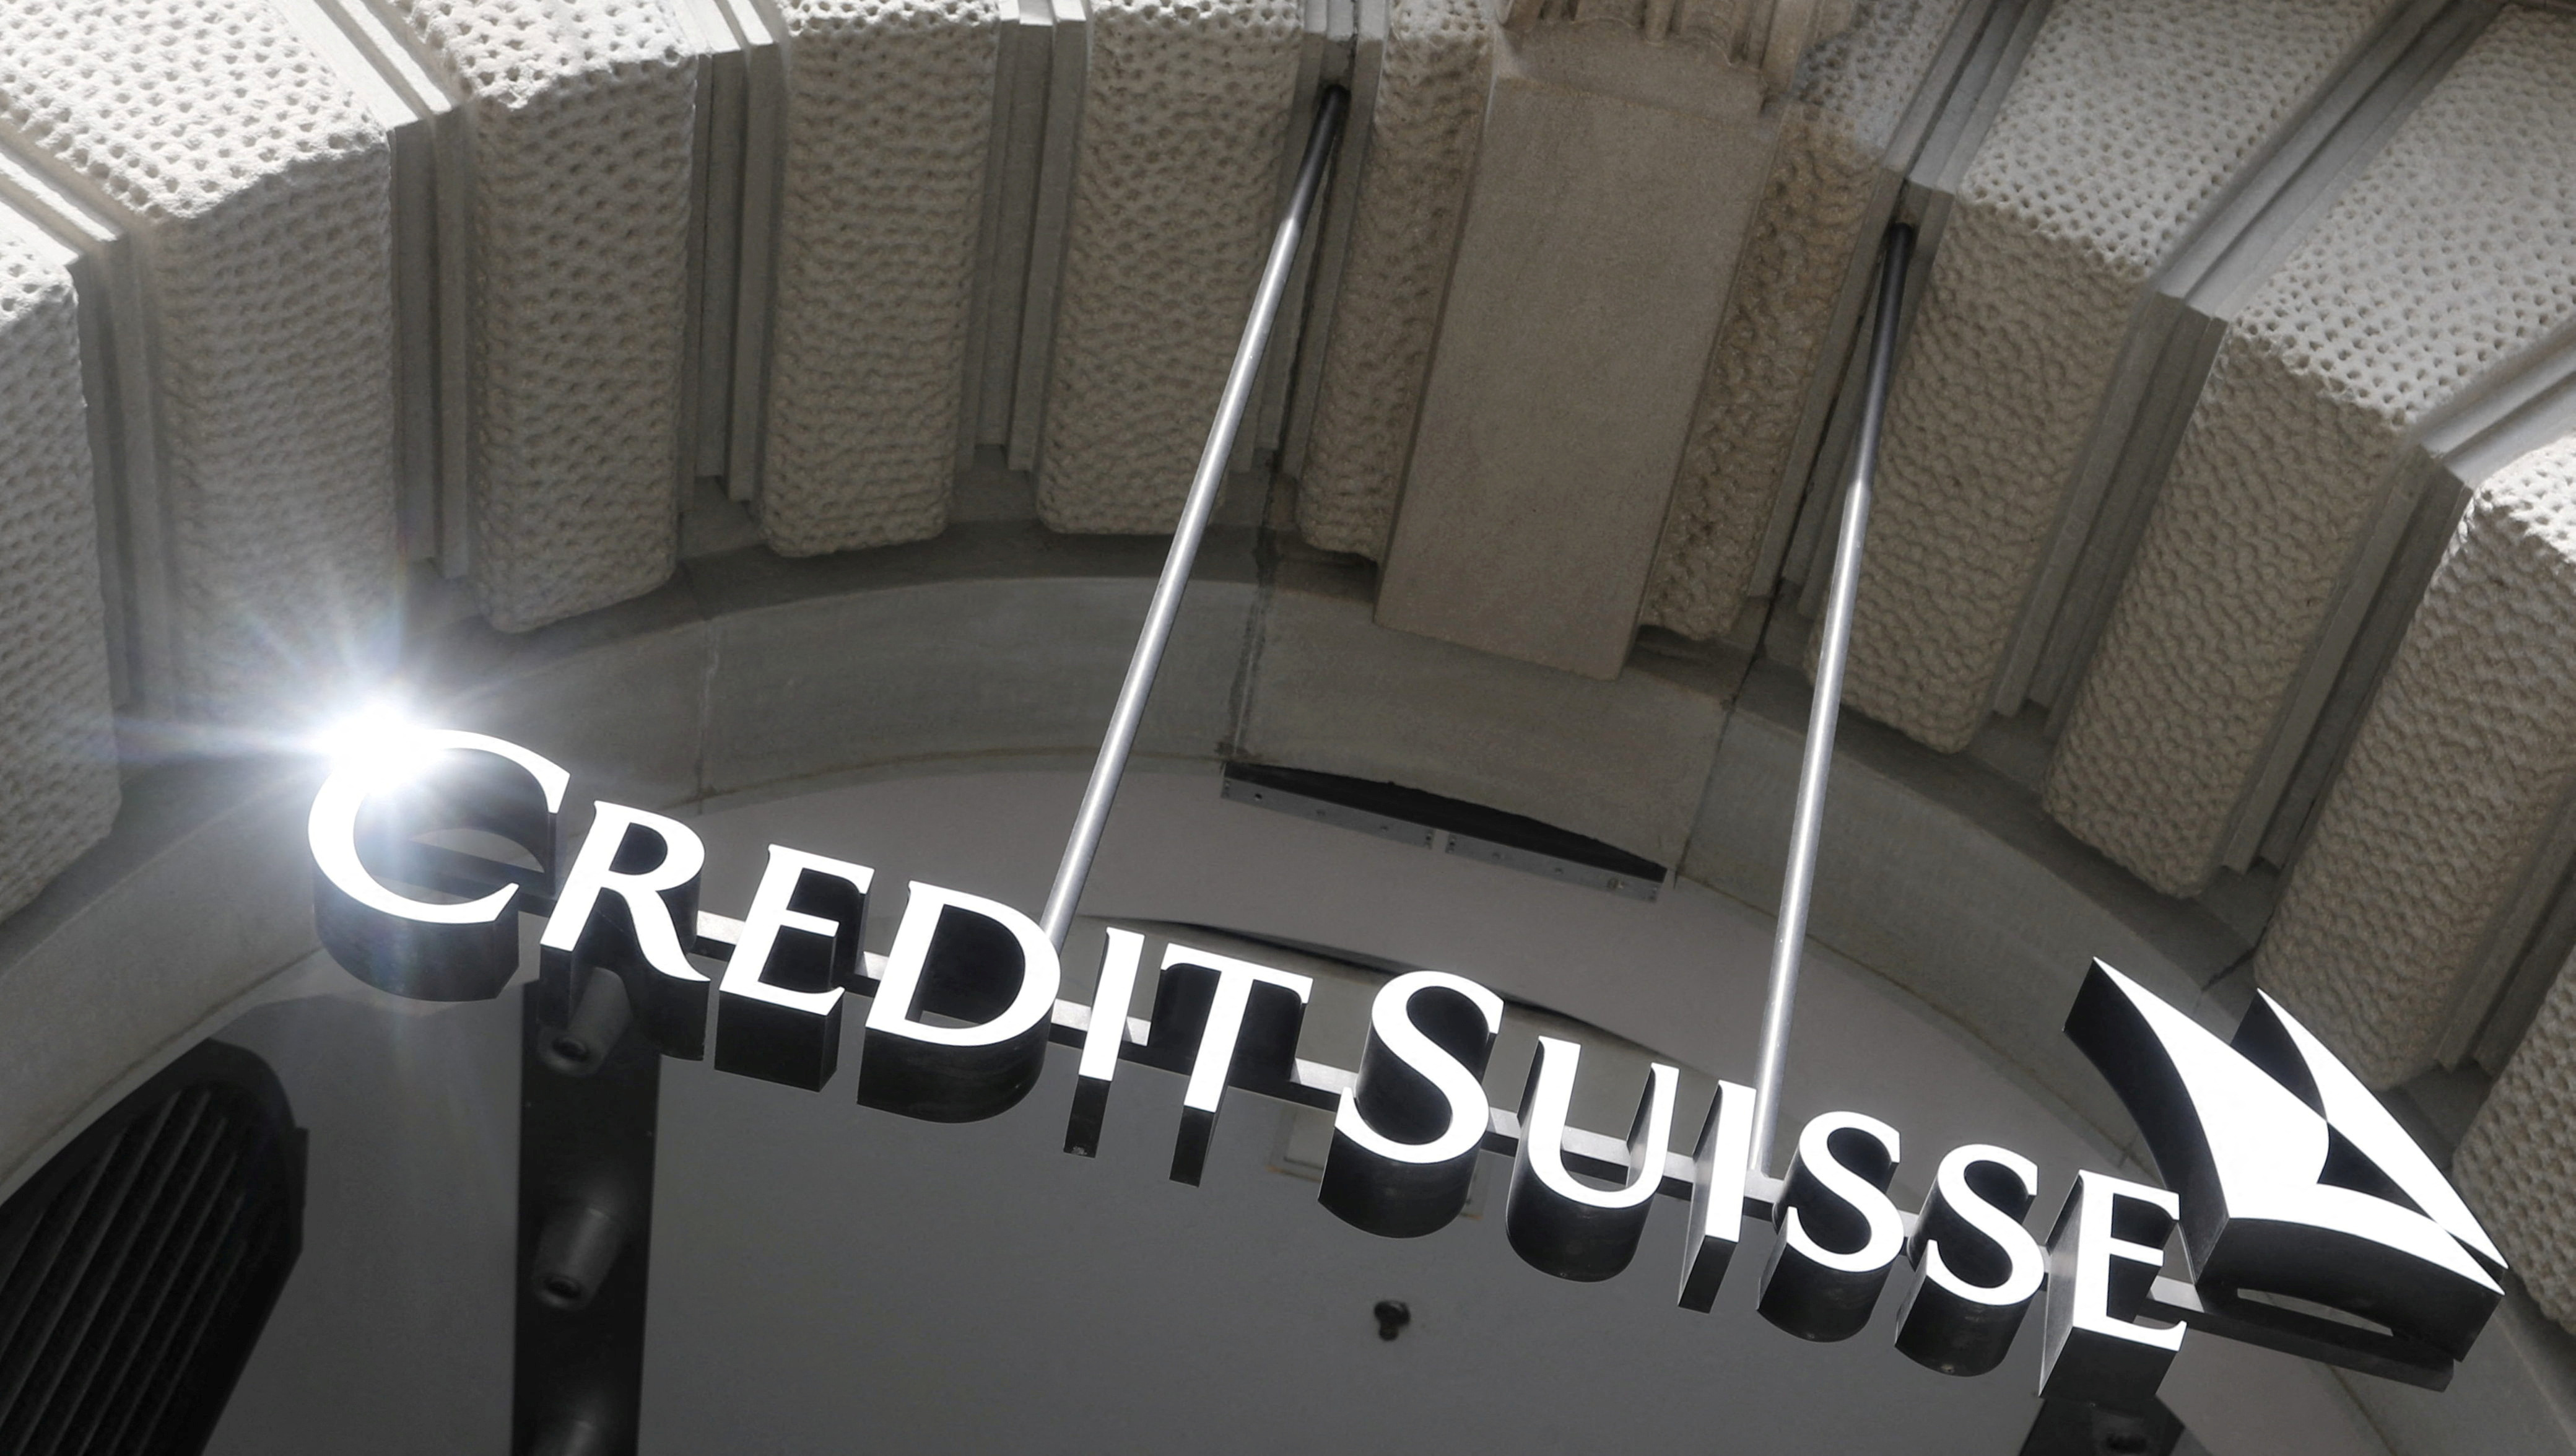  Swiss bank Credit Suisse in Zurich